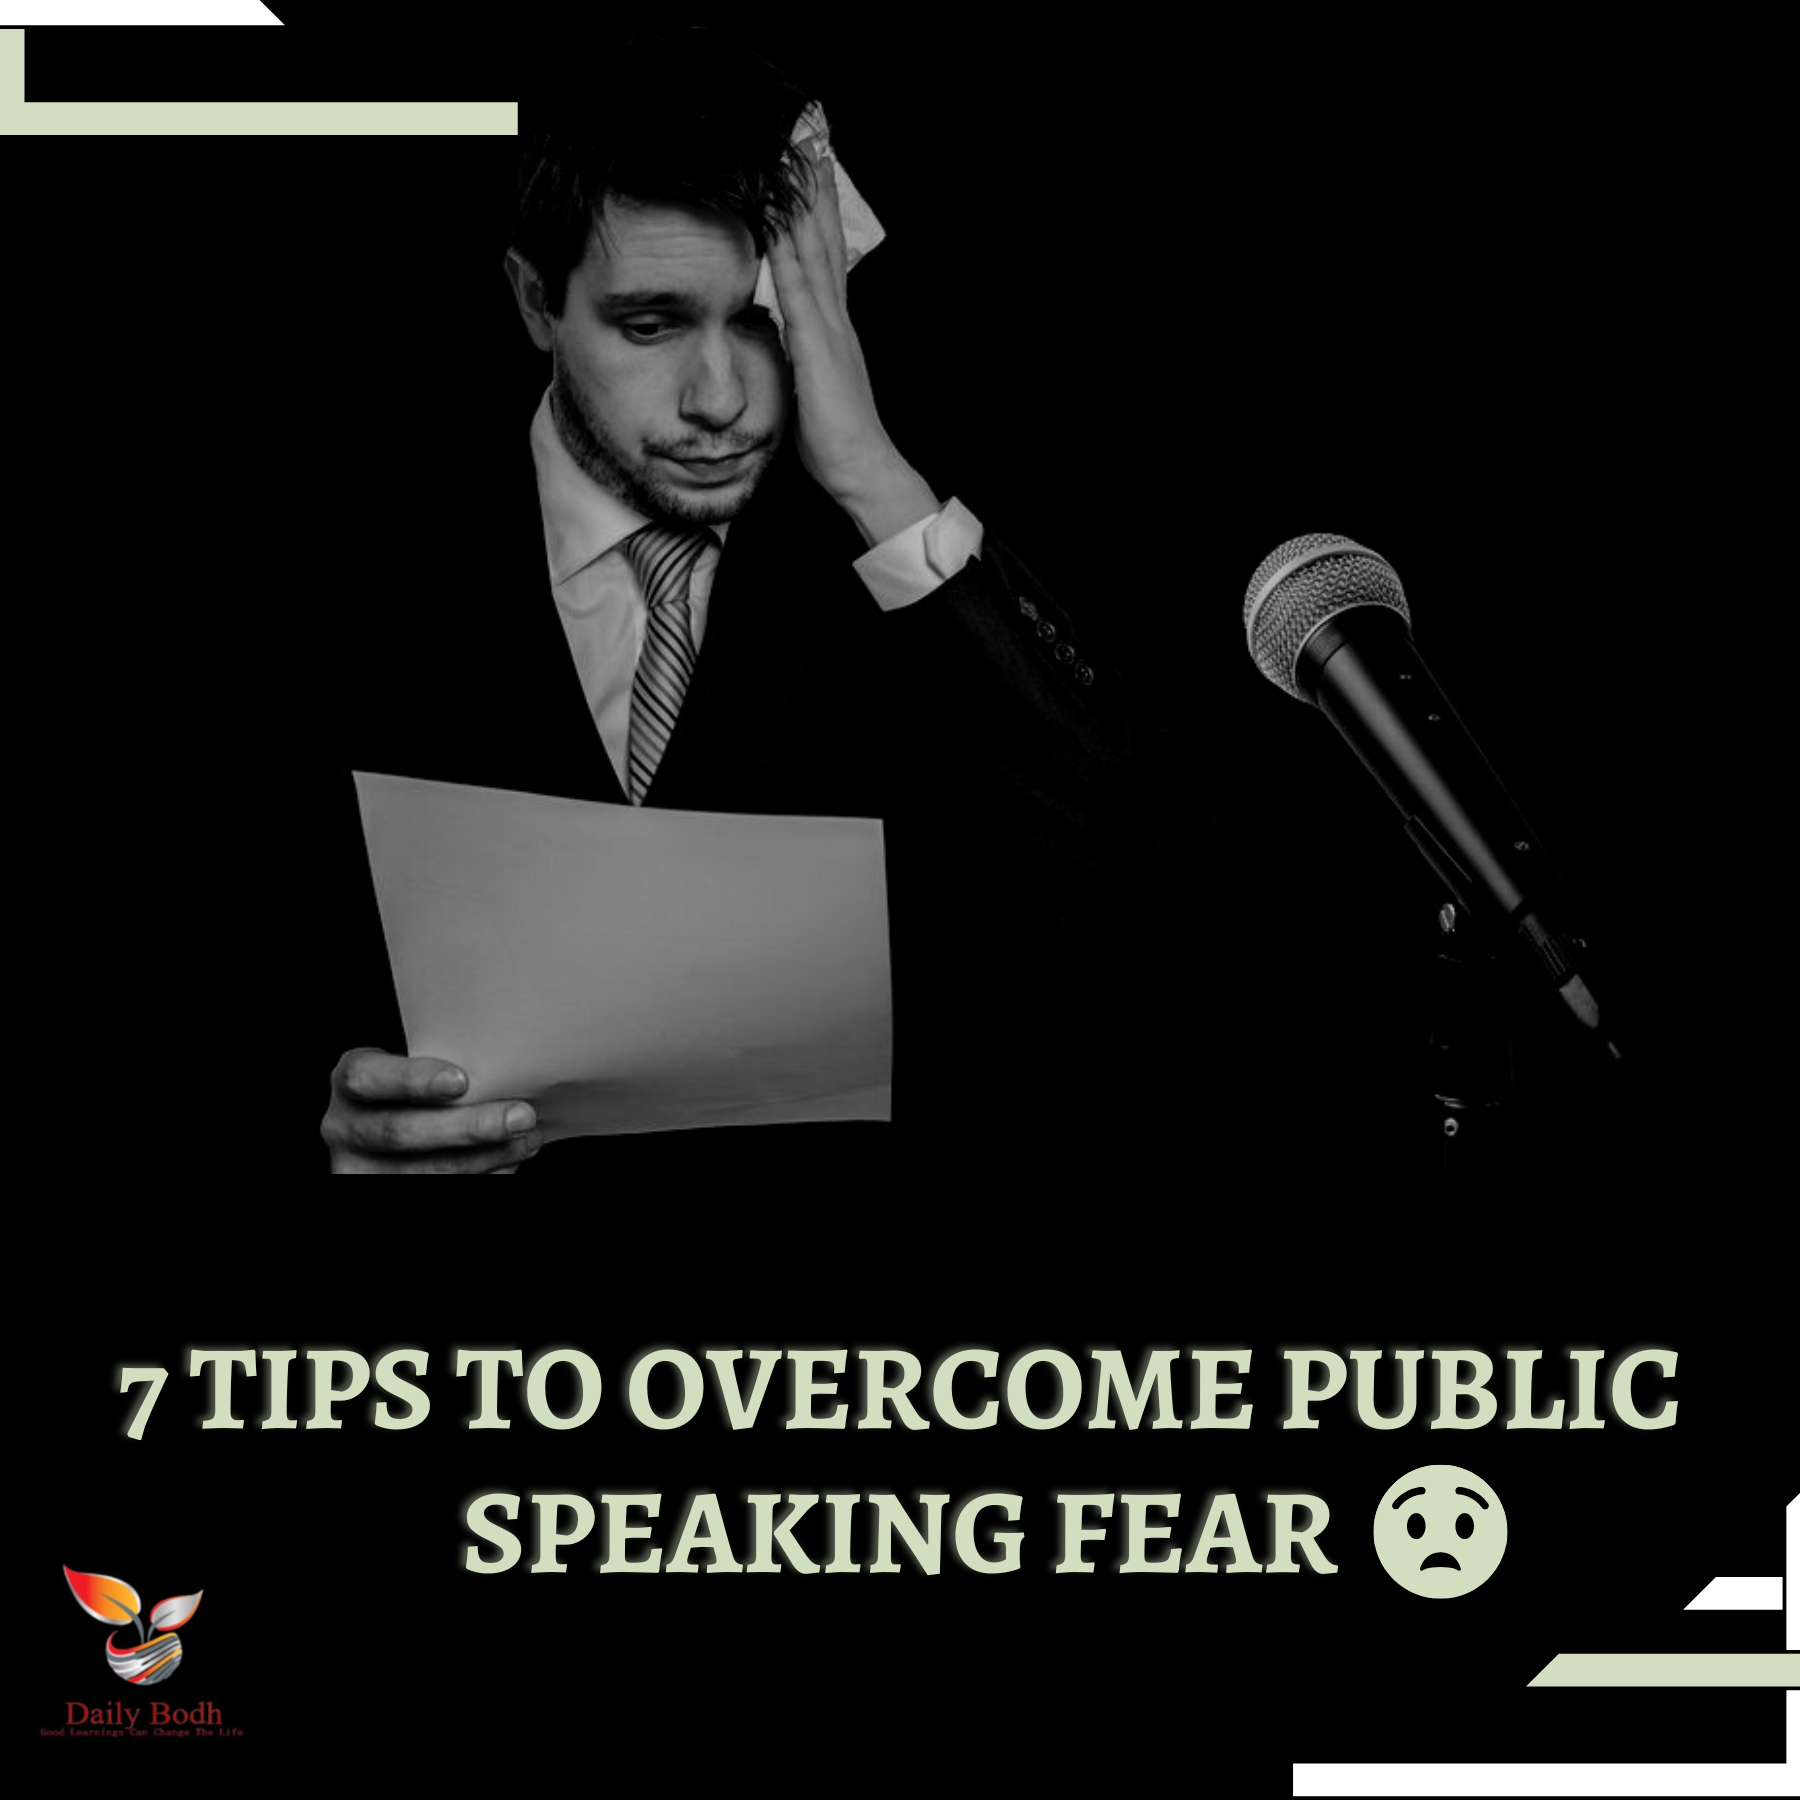 Public Speaking Fear